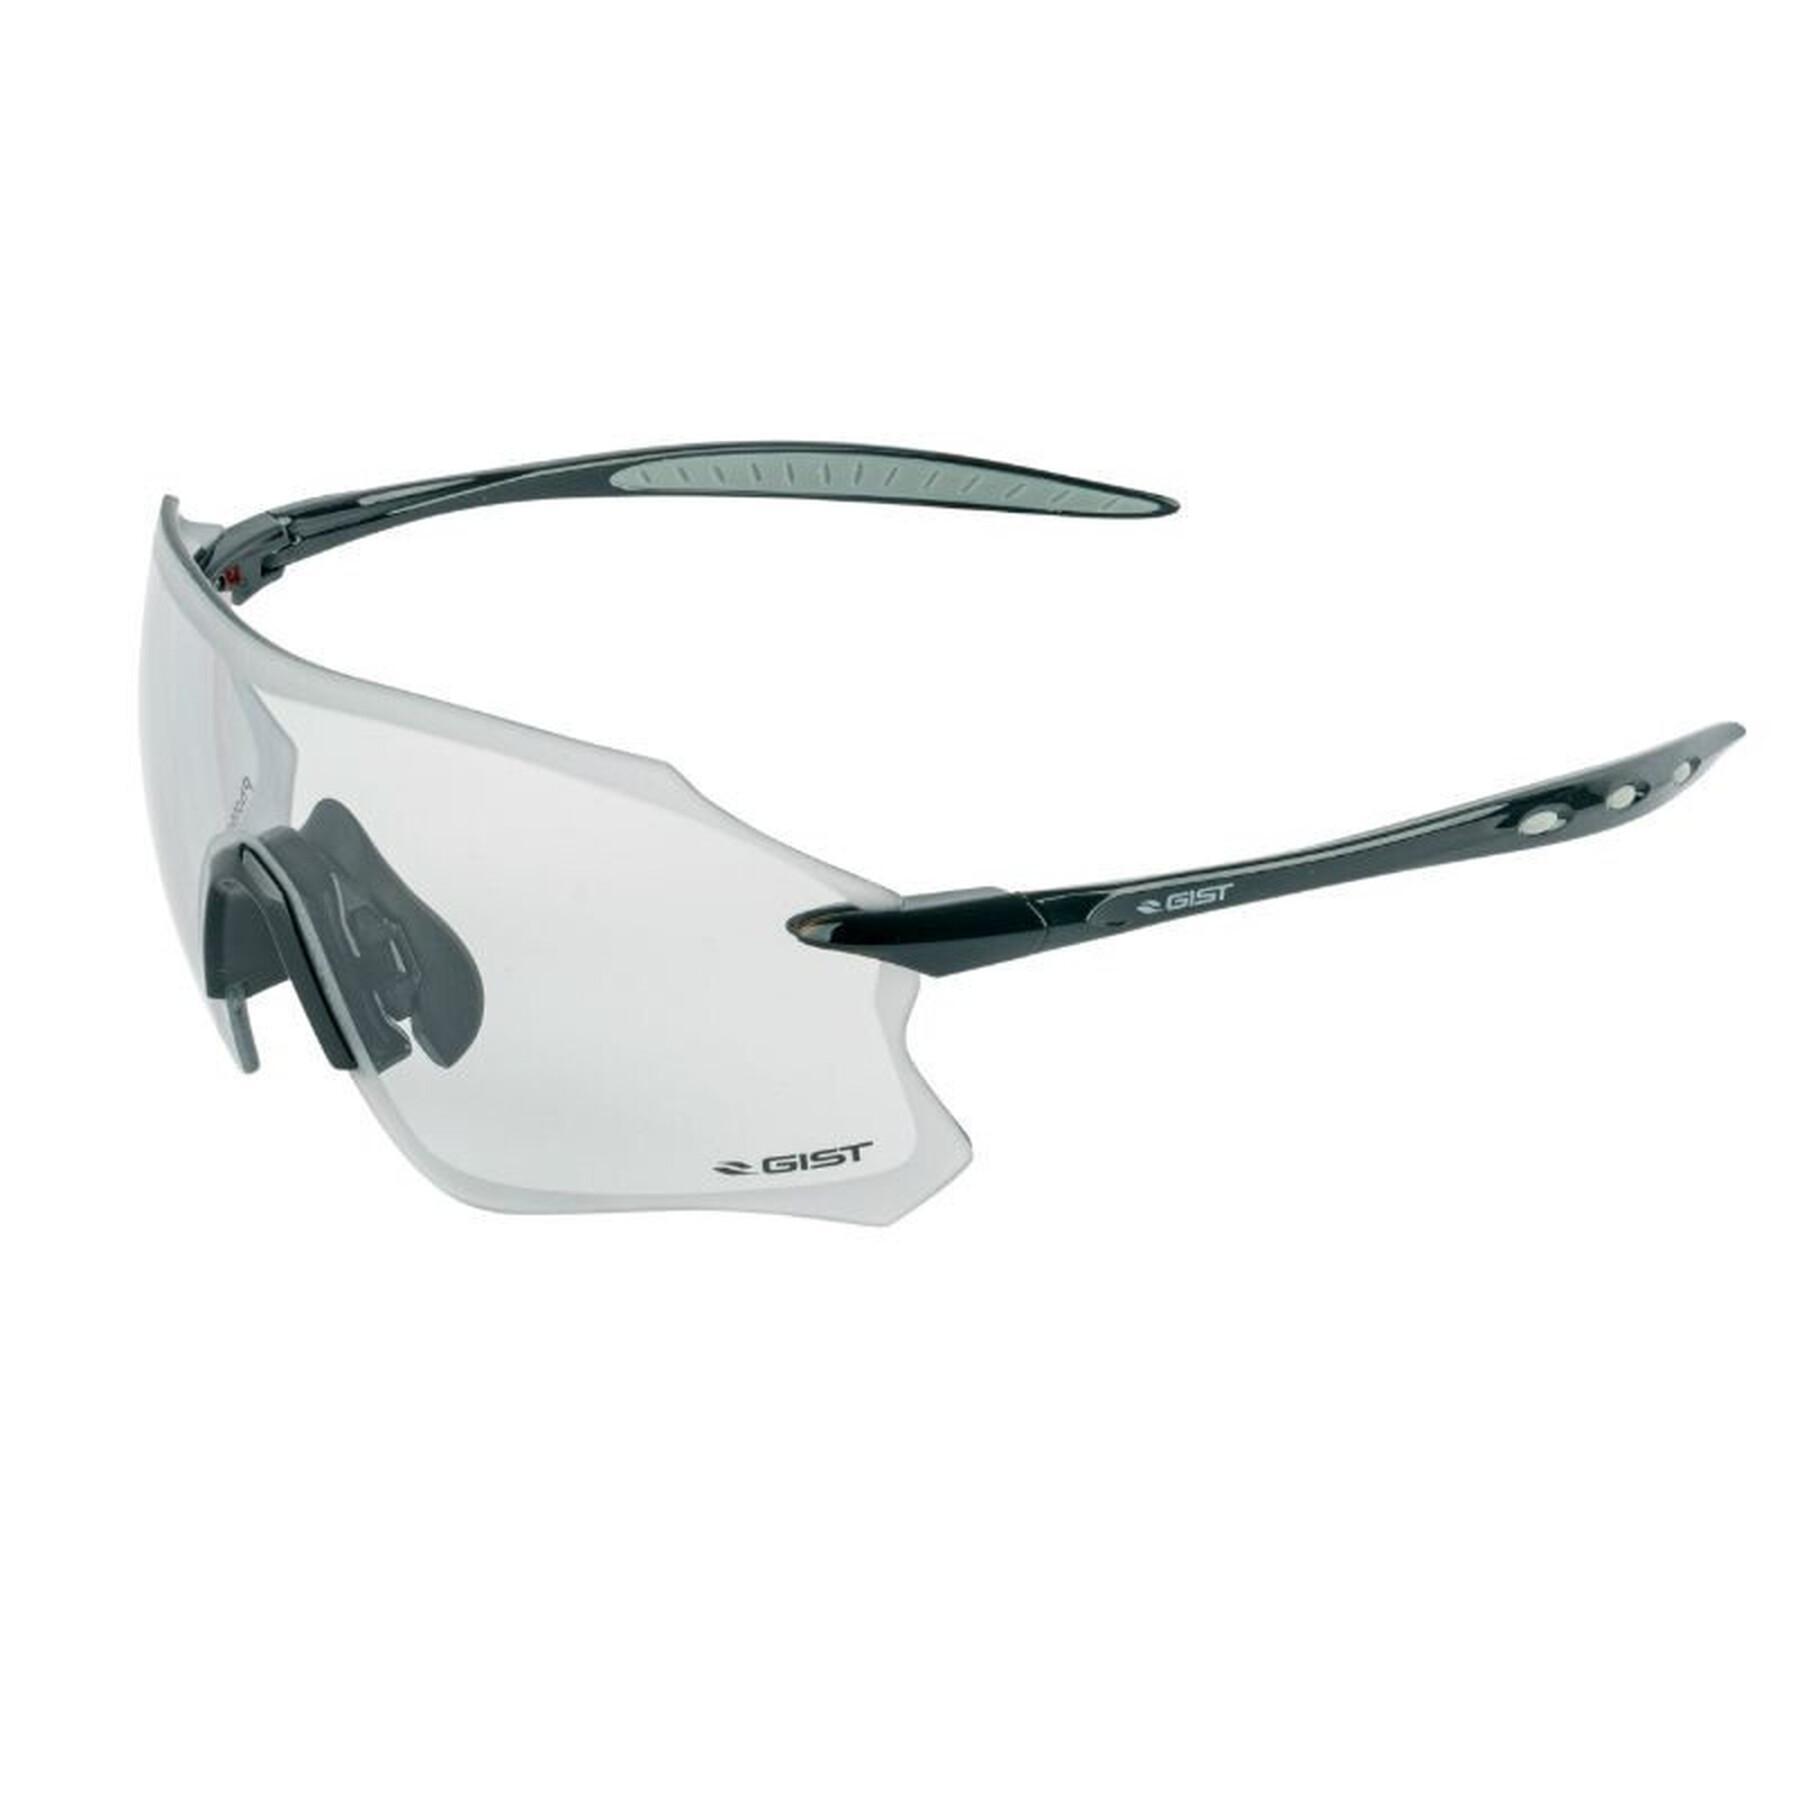 Occhiali da ciclismo montatura lenti fotocromatiche che si adattano automaticamente alla luce - Gist Pack ultraleggero